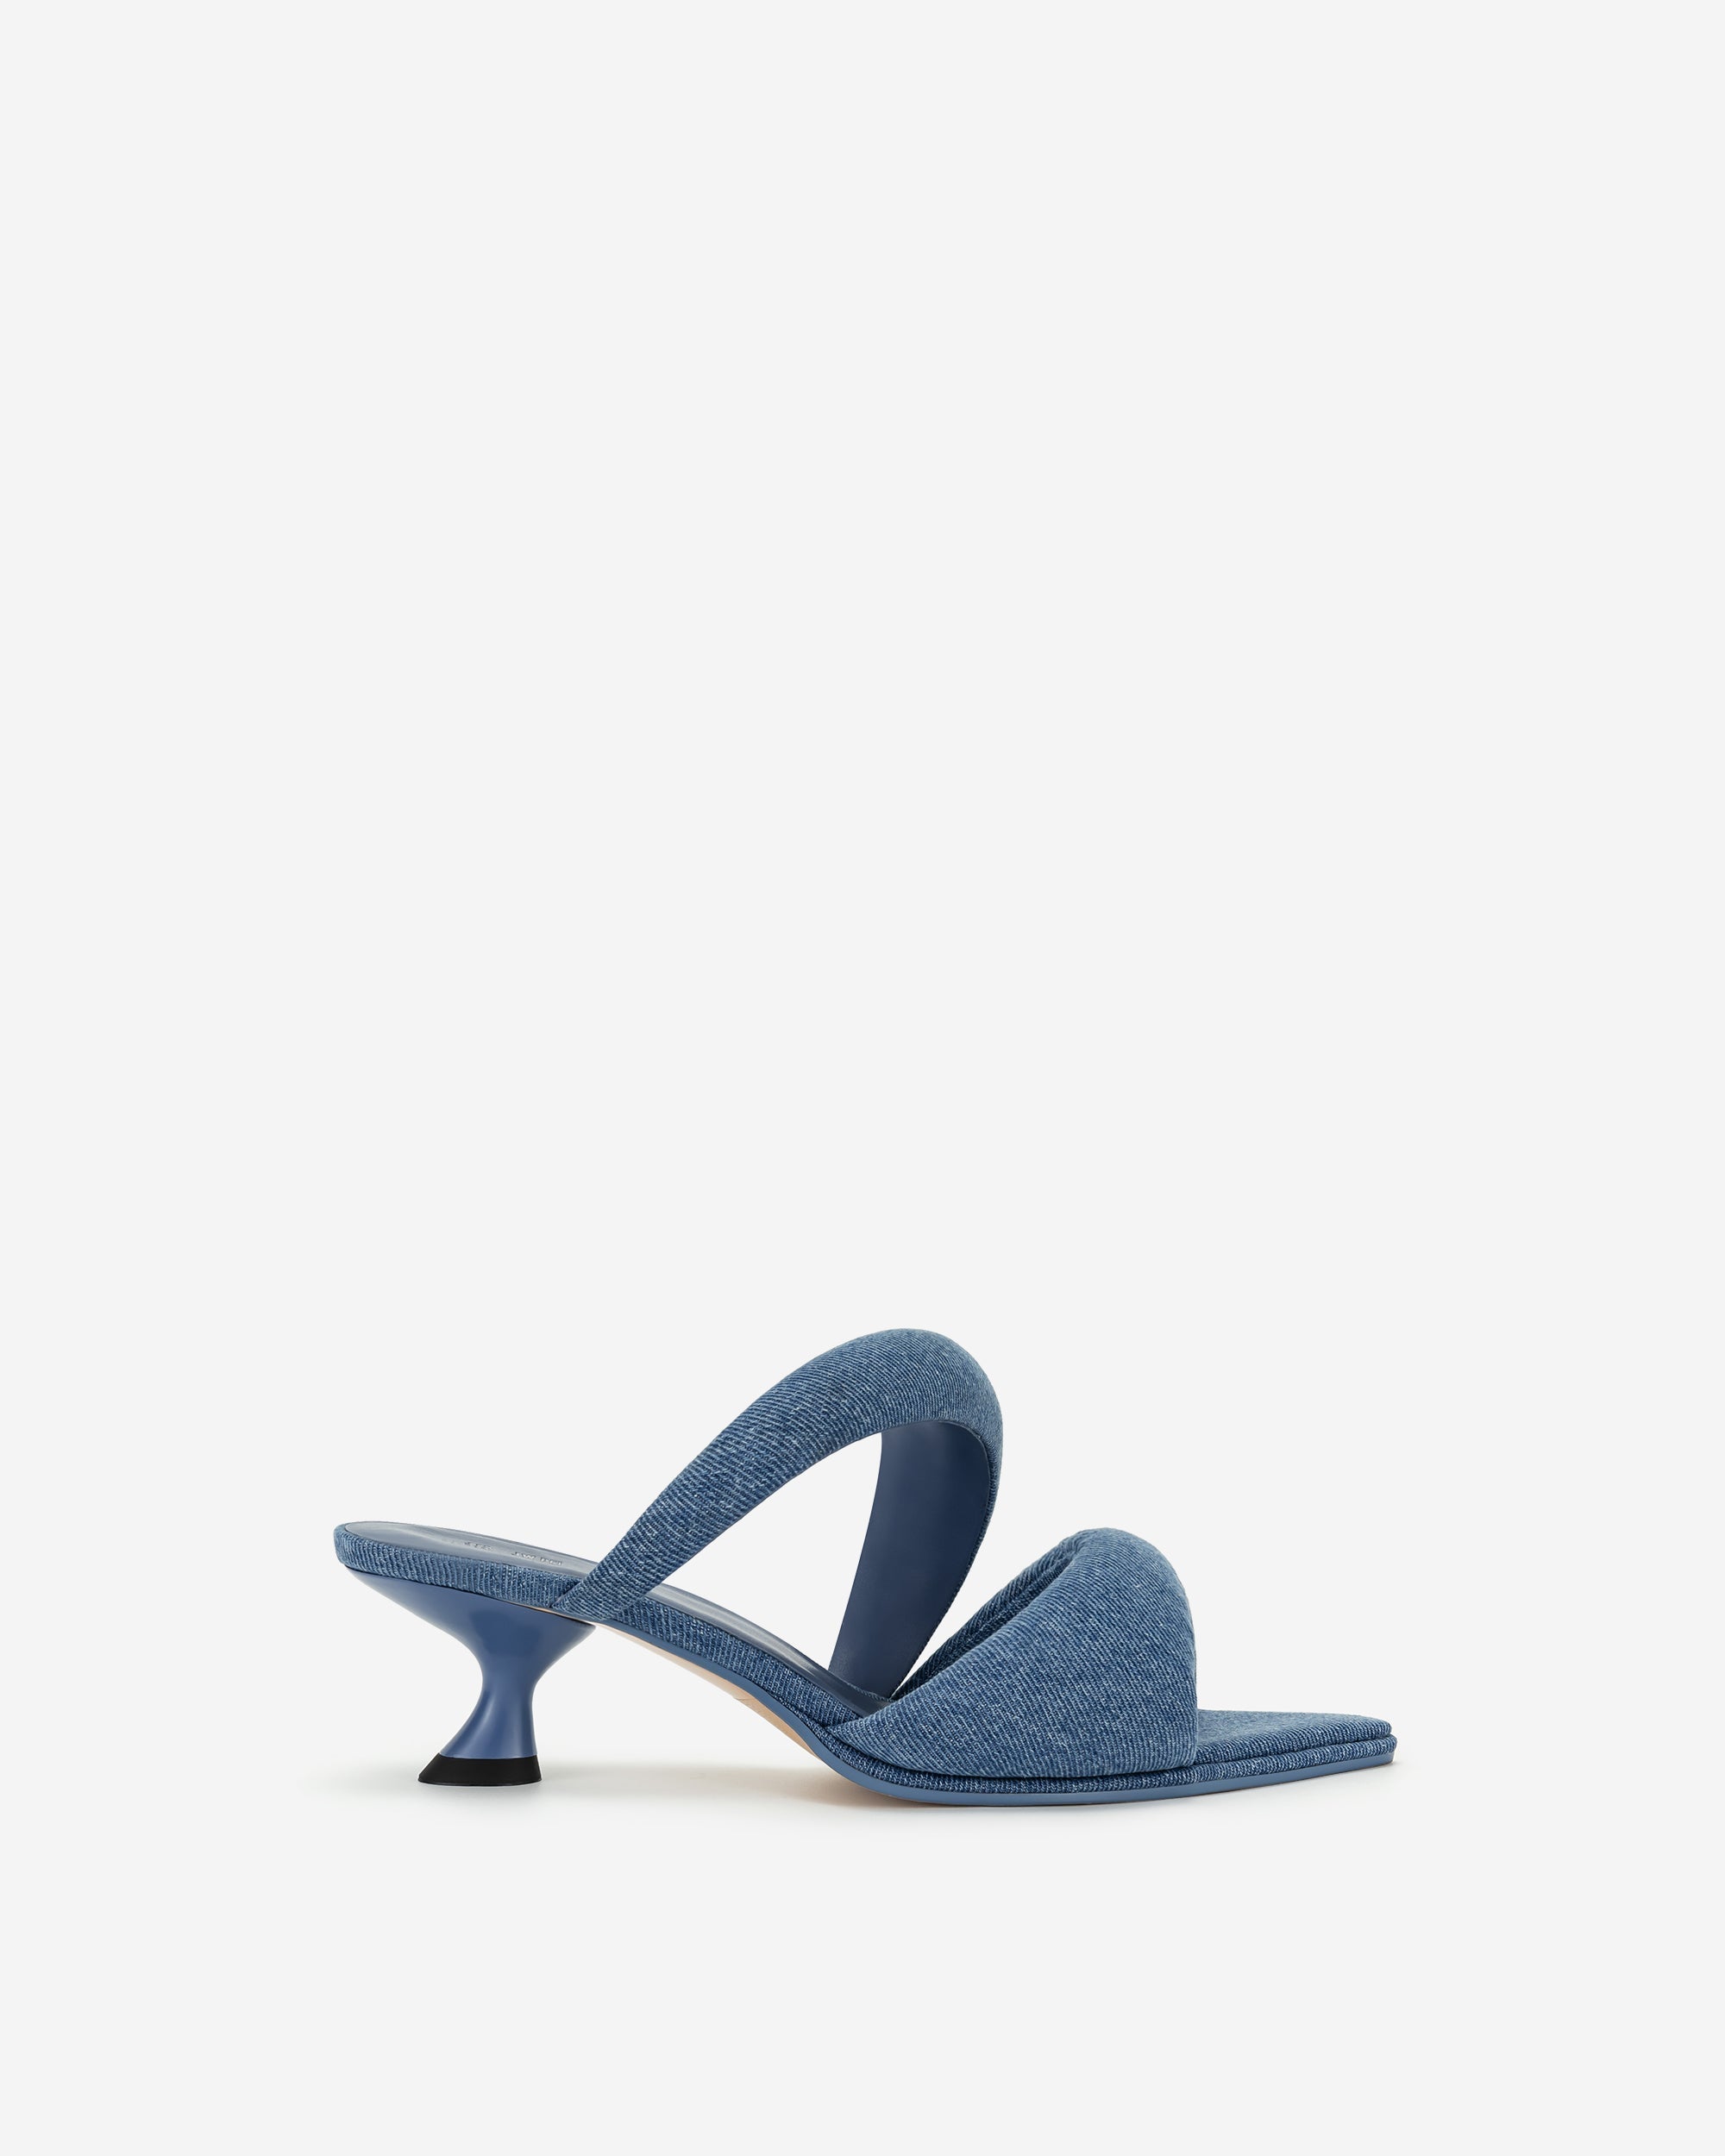 Sara 牛仔穆勒鞋 - 藍色